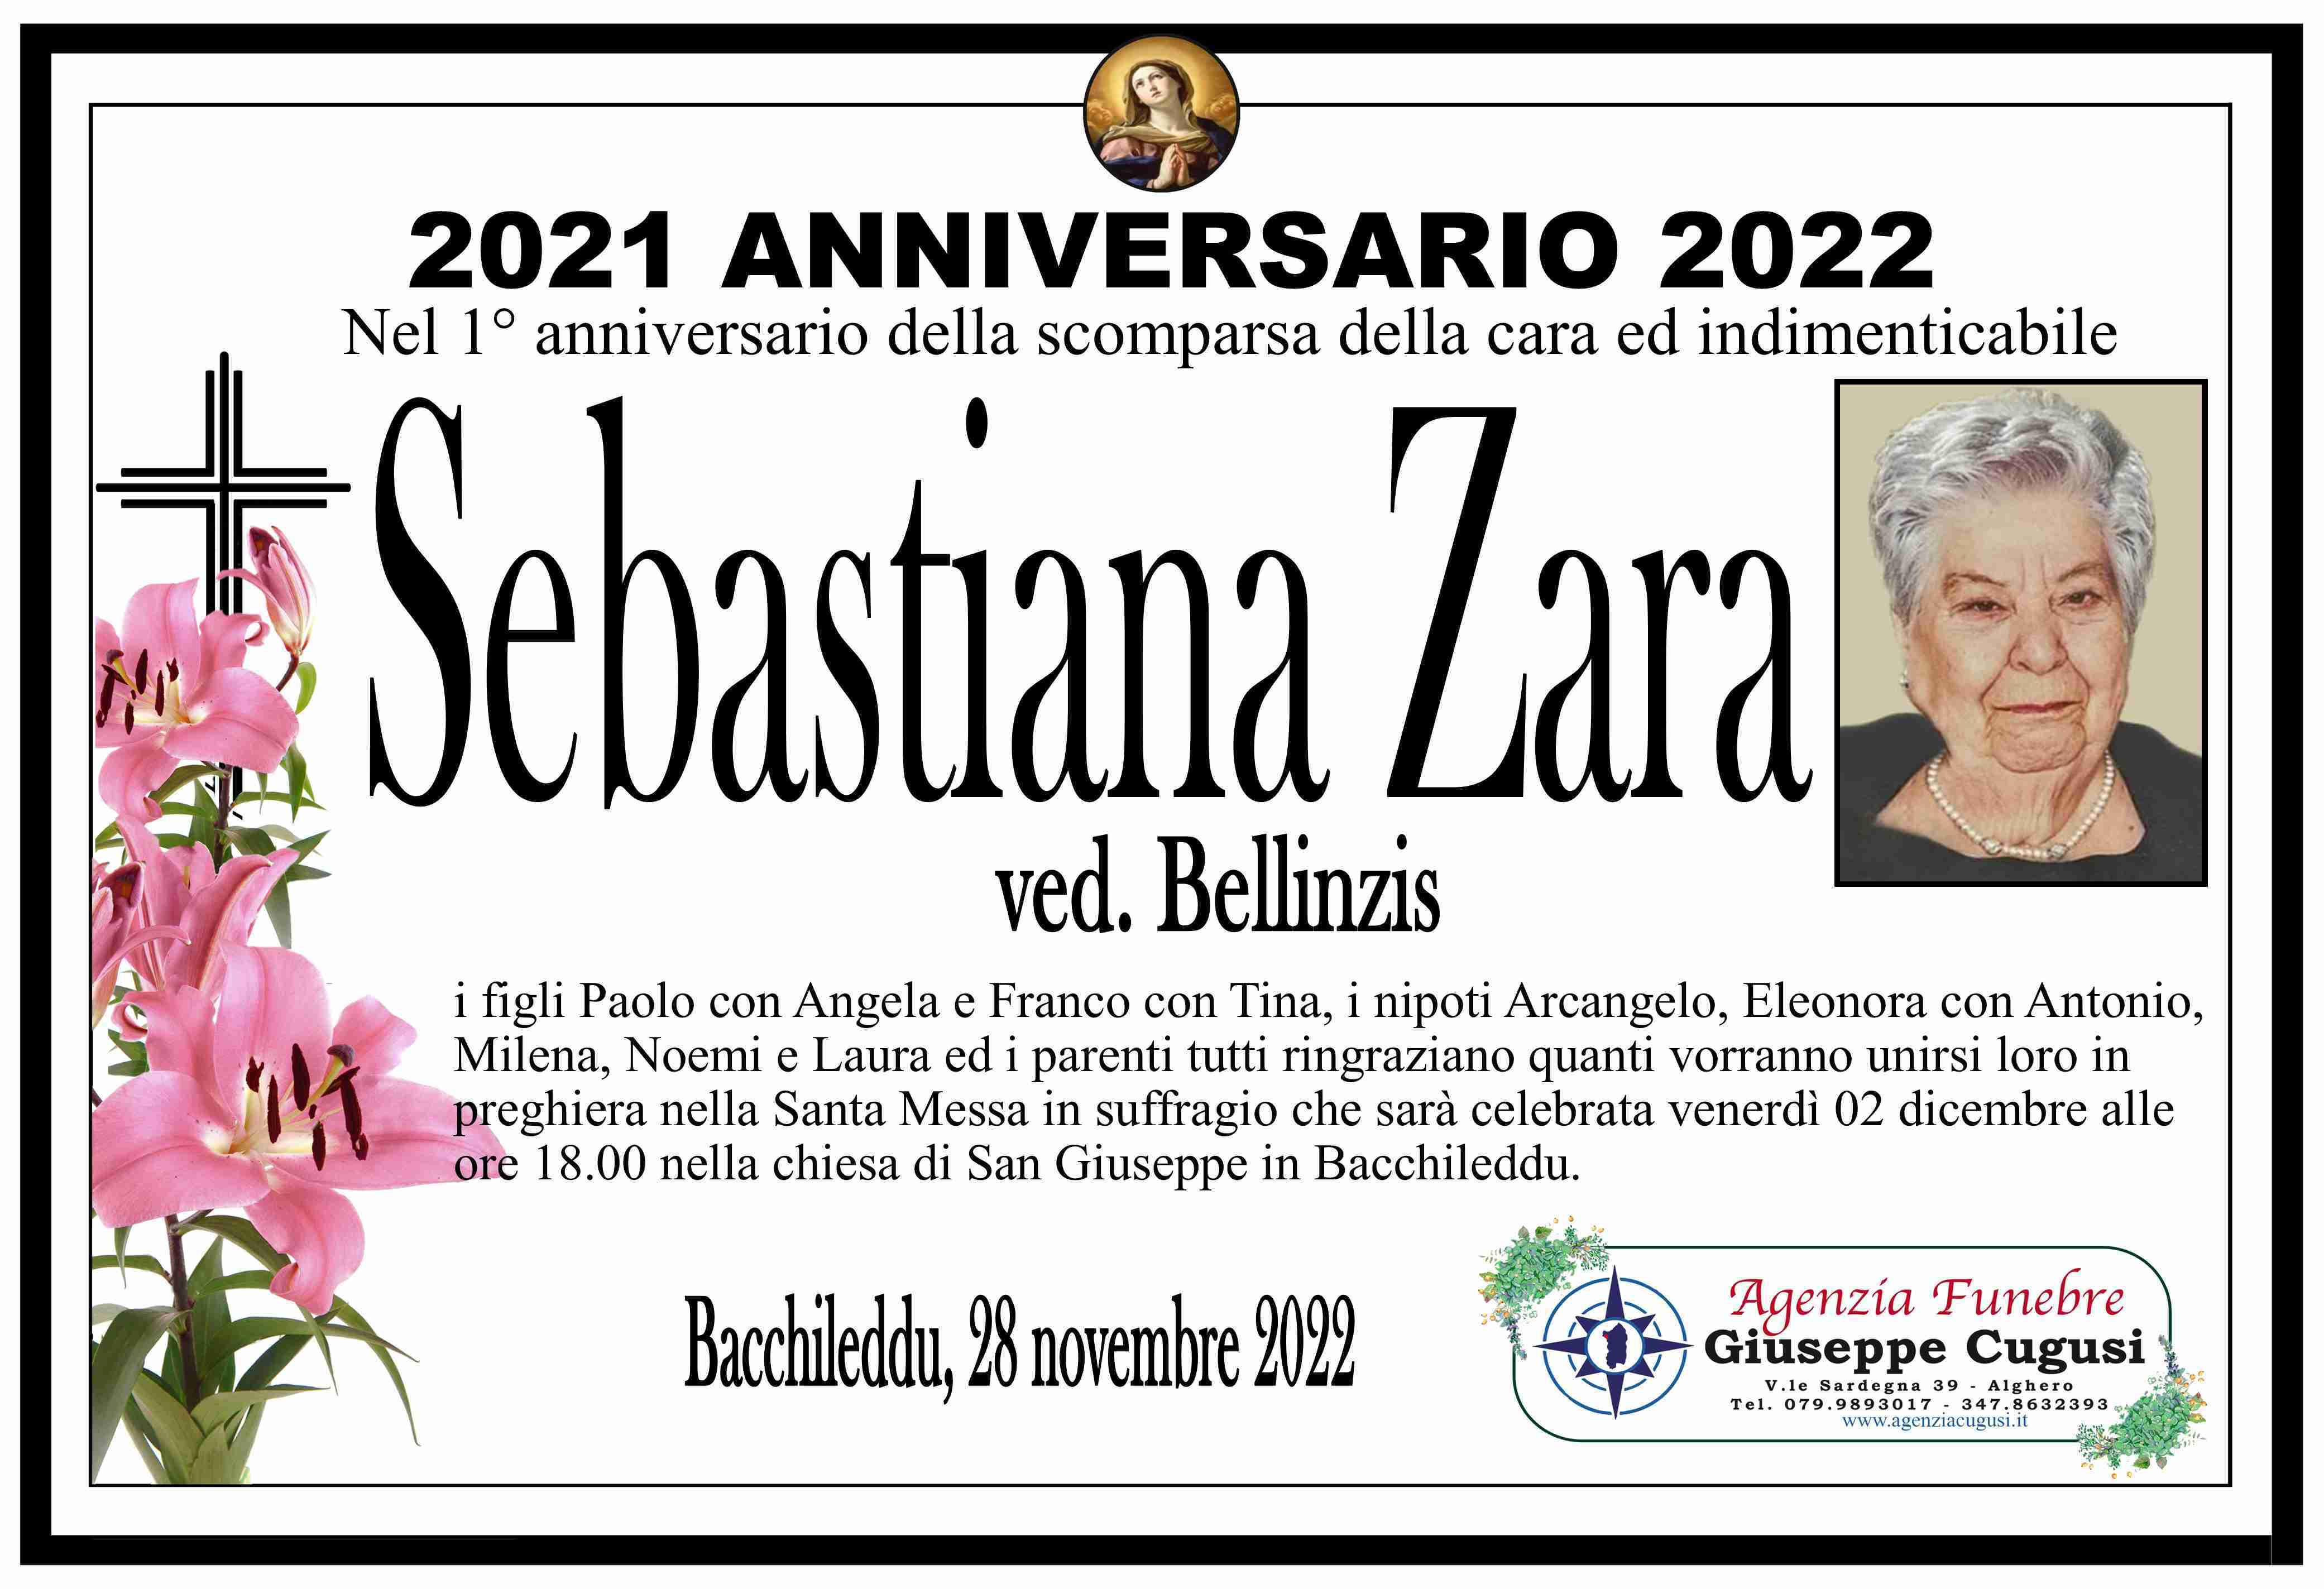 Sebastiana Zara